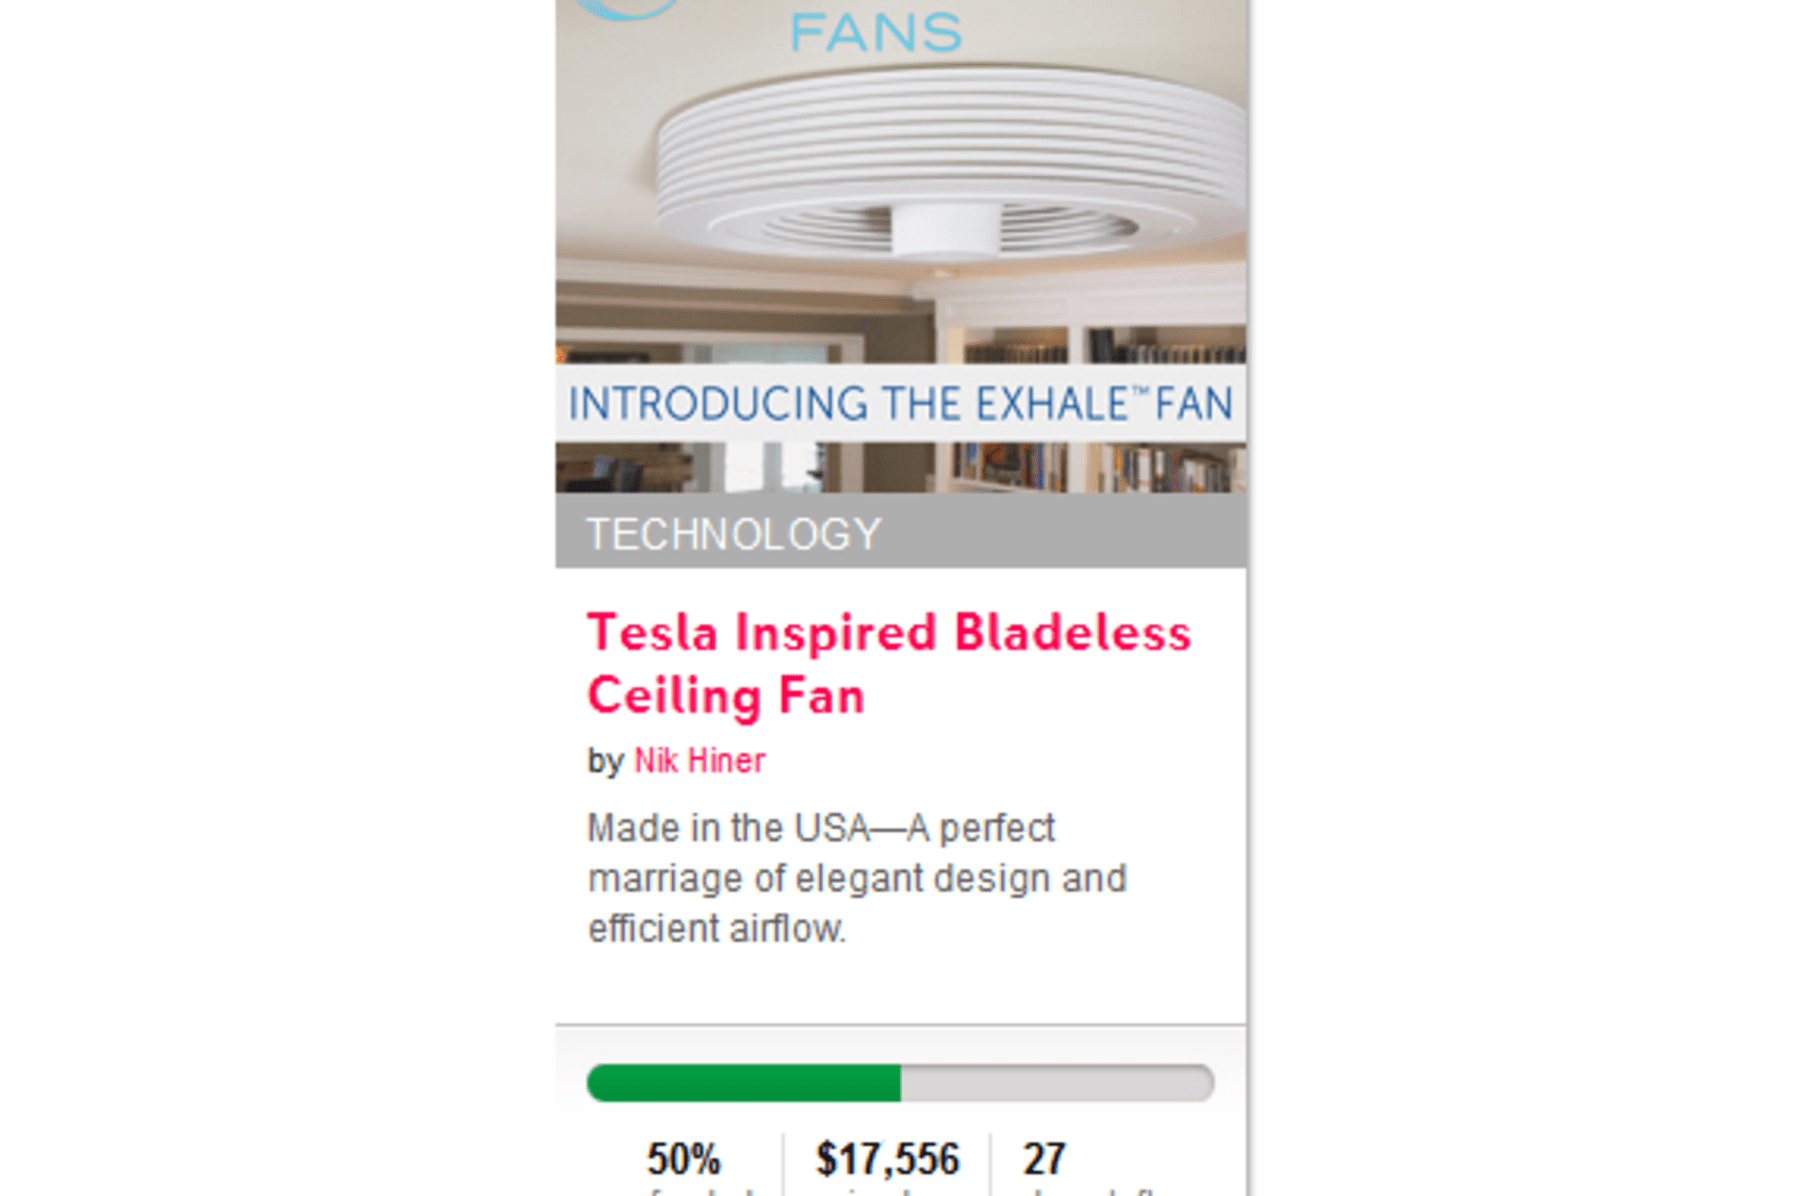 Tesla Inspired Bladeless Ceiling Fan